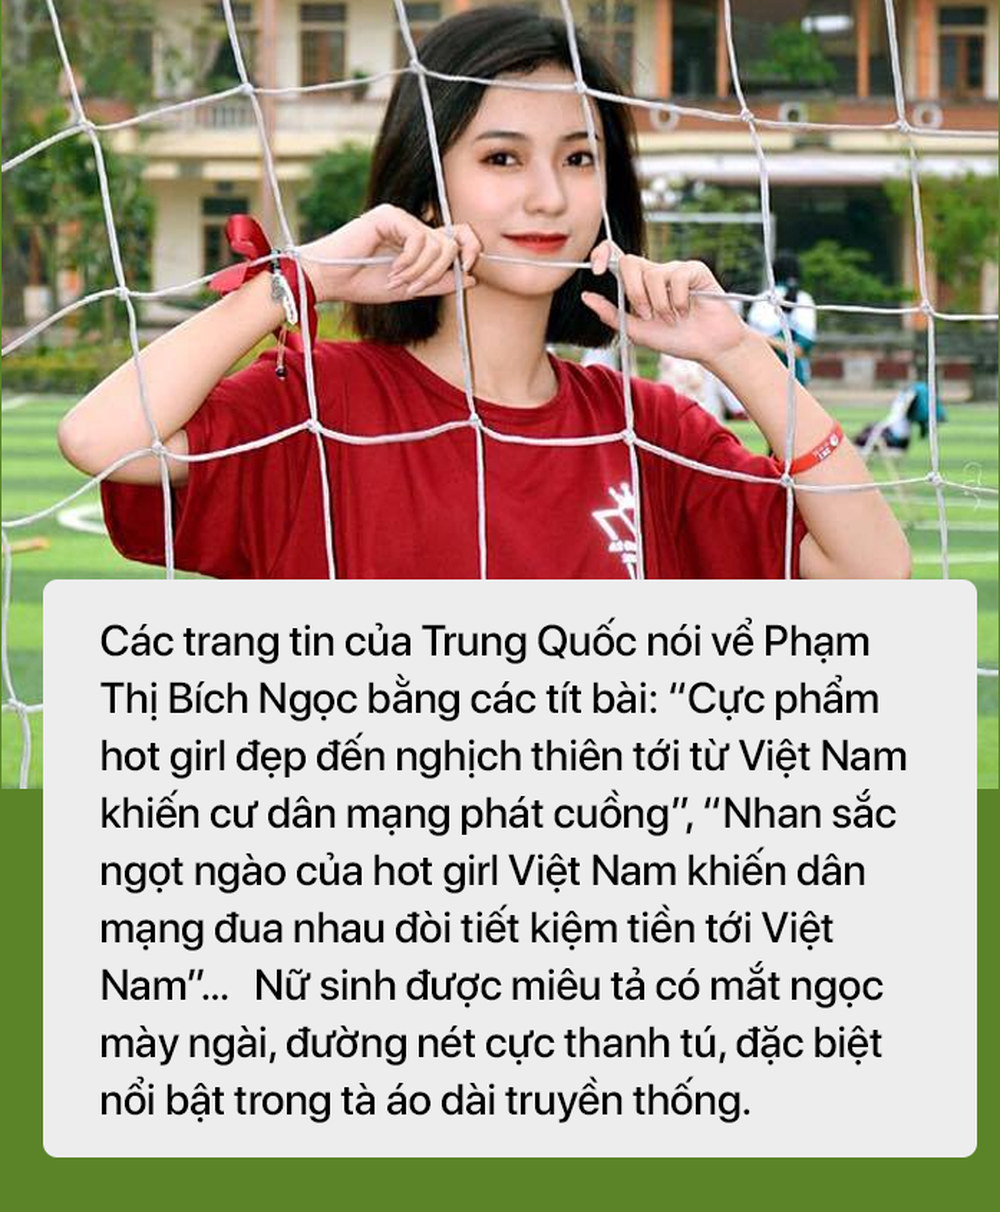 5 cô gái Việt khiến báo Trung Quốc tốn không ít giấy mực: Xinh đẹp, nhiều người ngưỡng mộ - Ảnh 9.